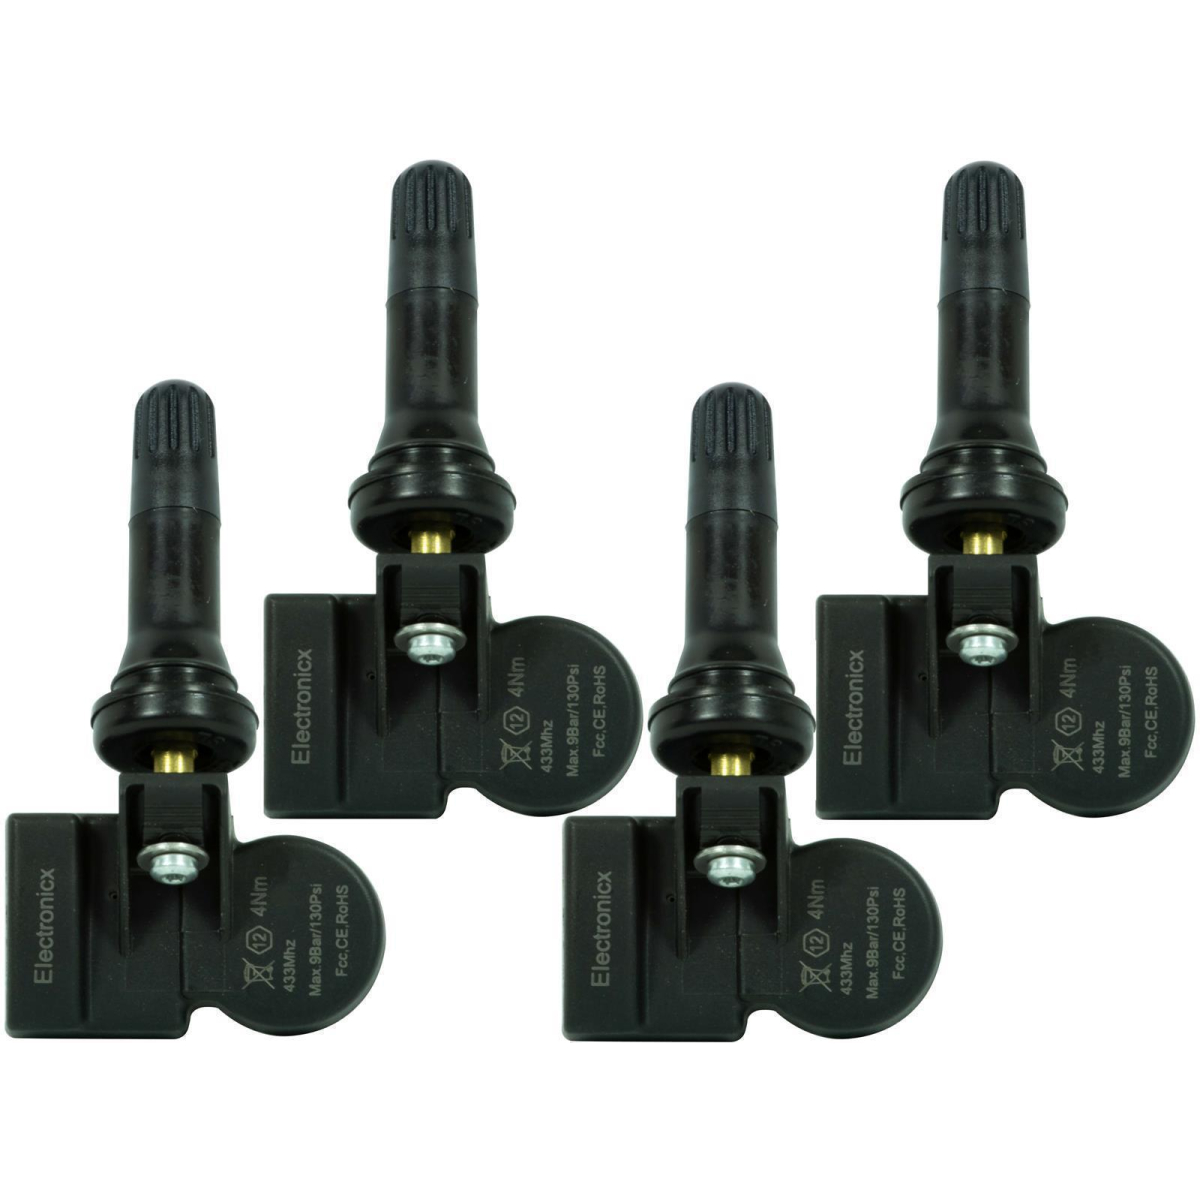 4 tire pressure sensors rdks sensors rubber valve for Maxus G10 GC91B50 01.2014-12.2020